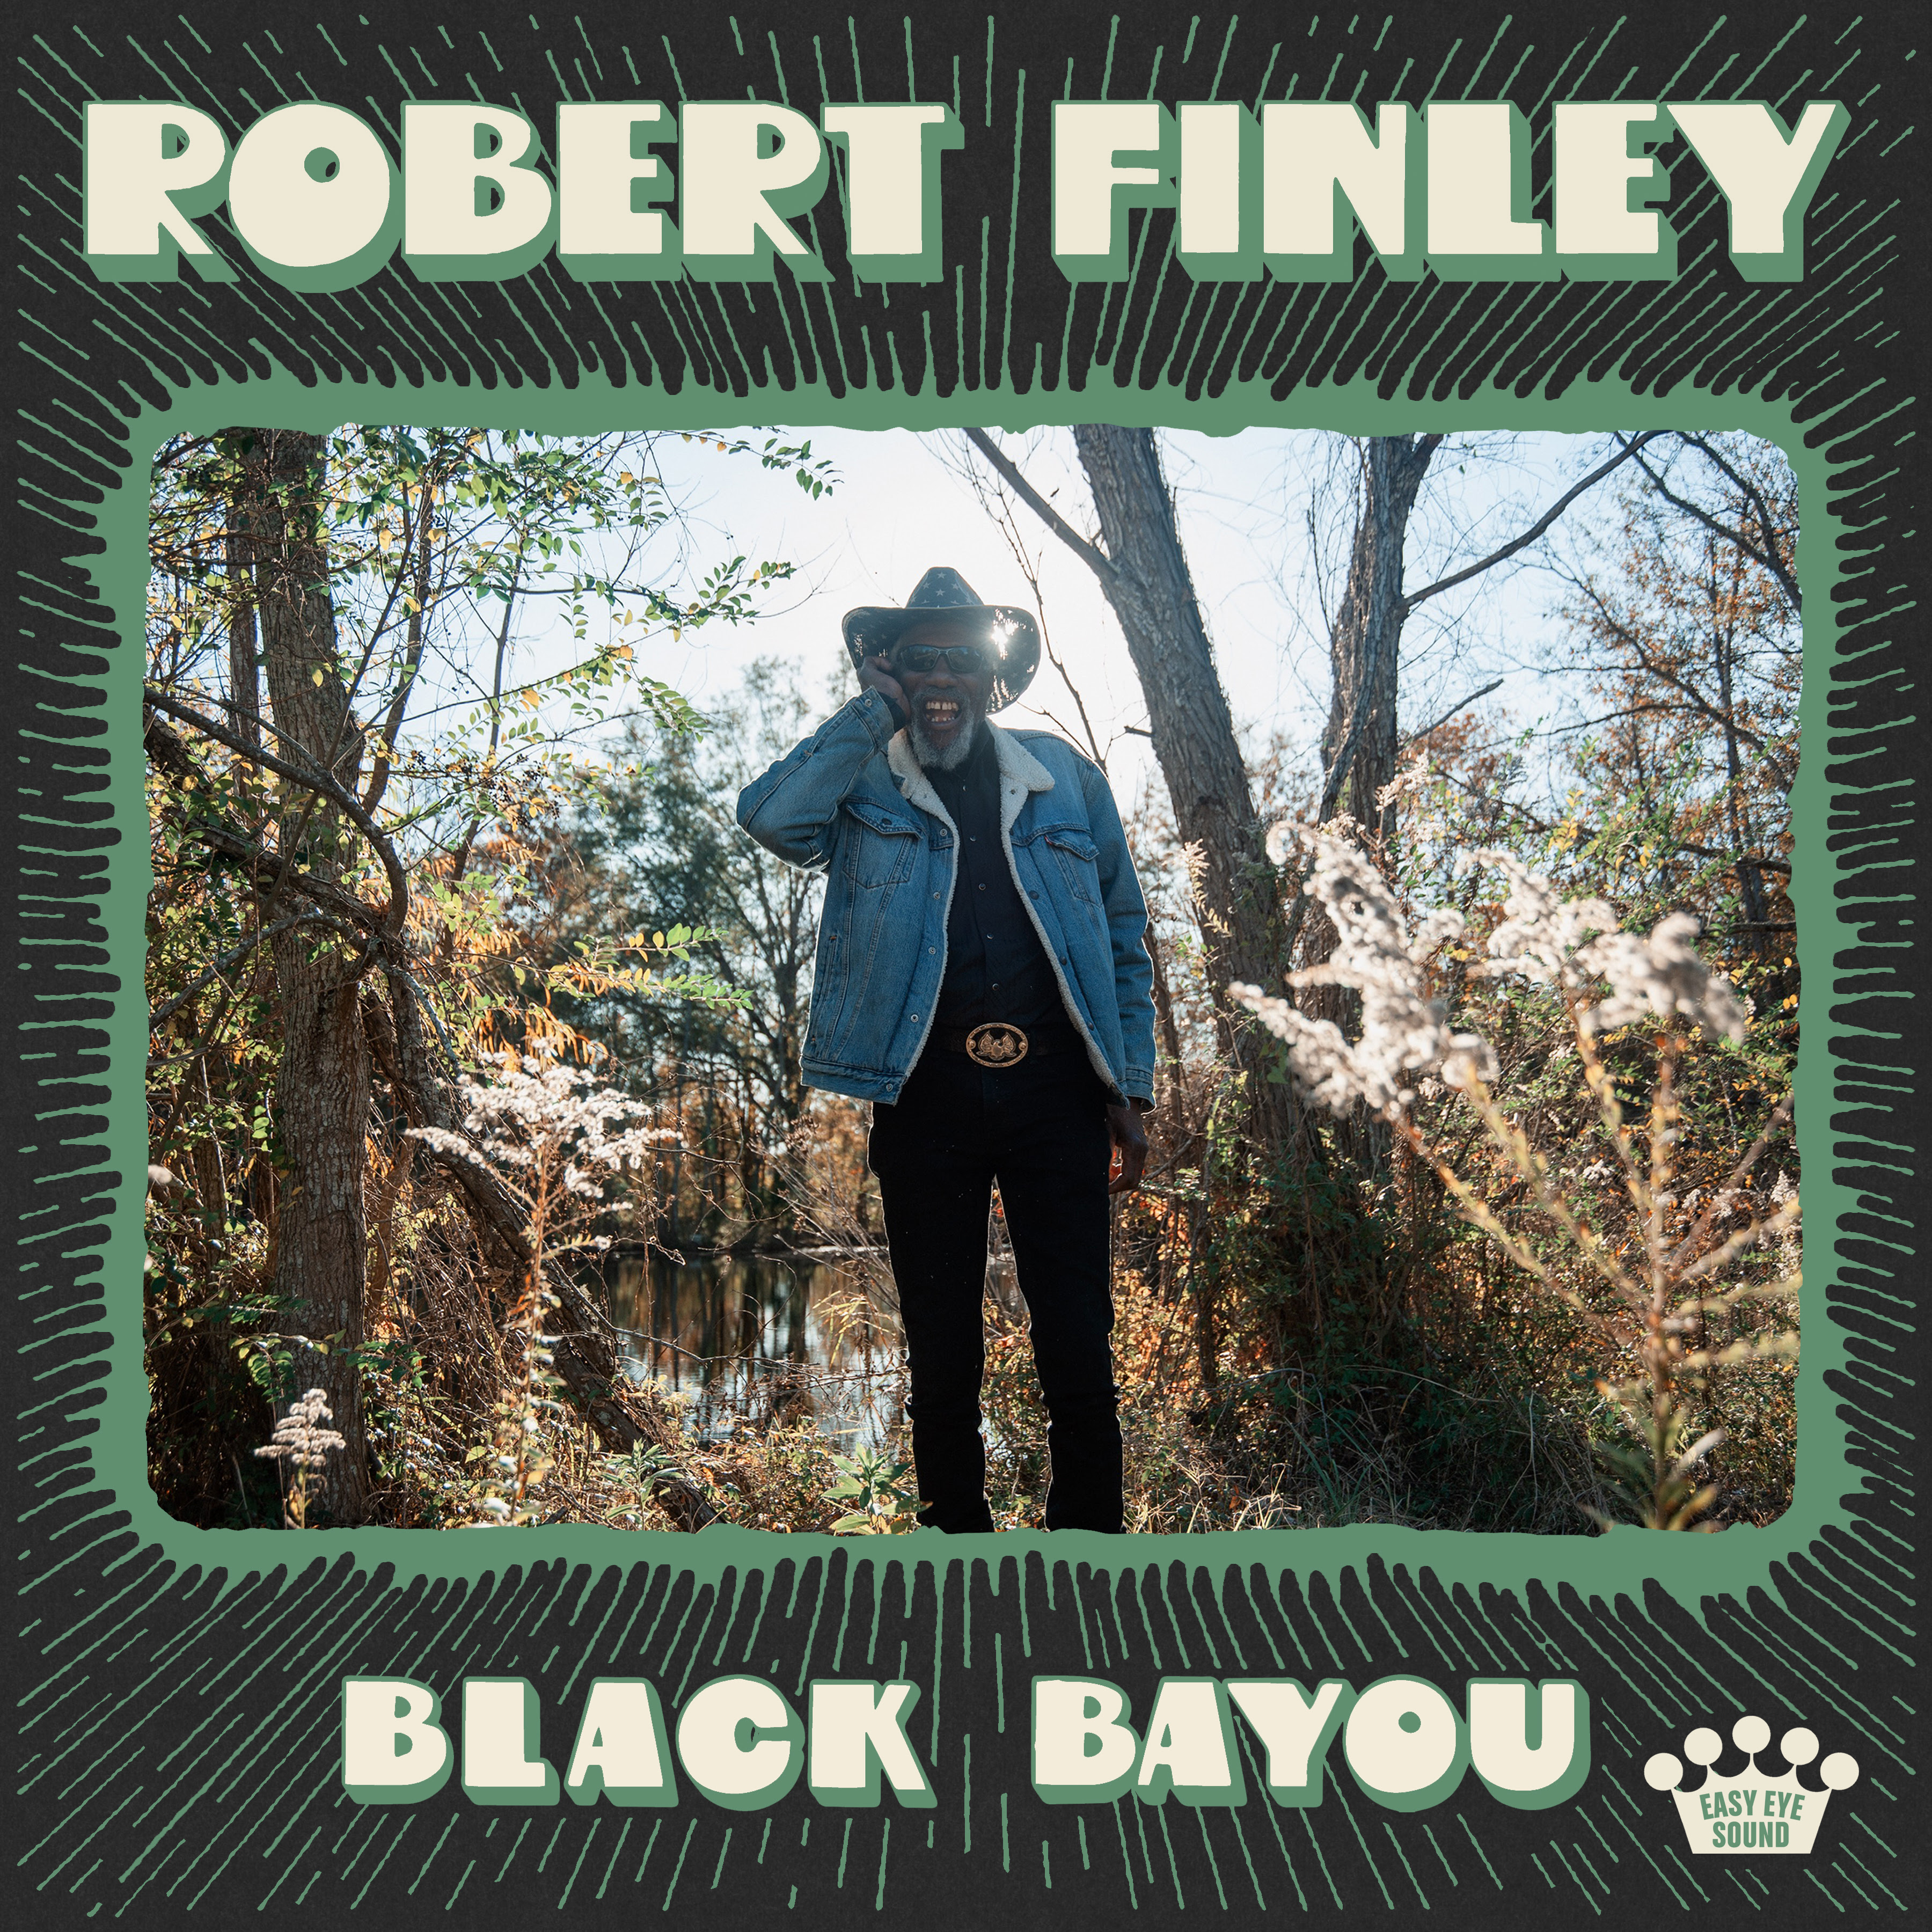 Robert Finley Announces New Album "Black Bayou" due October 27